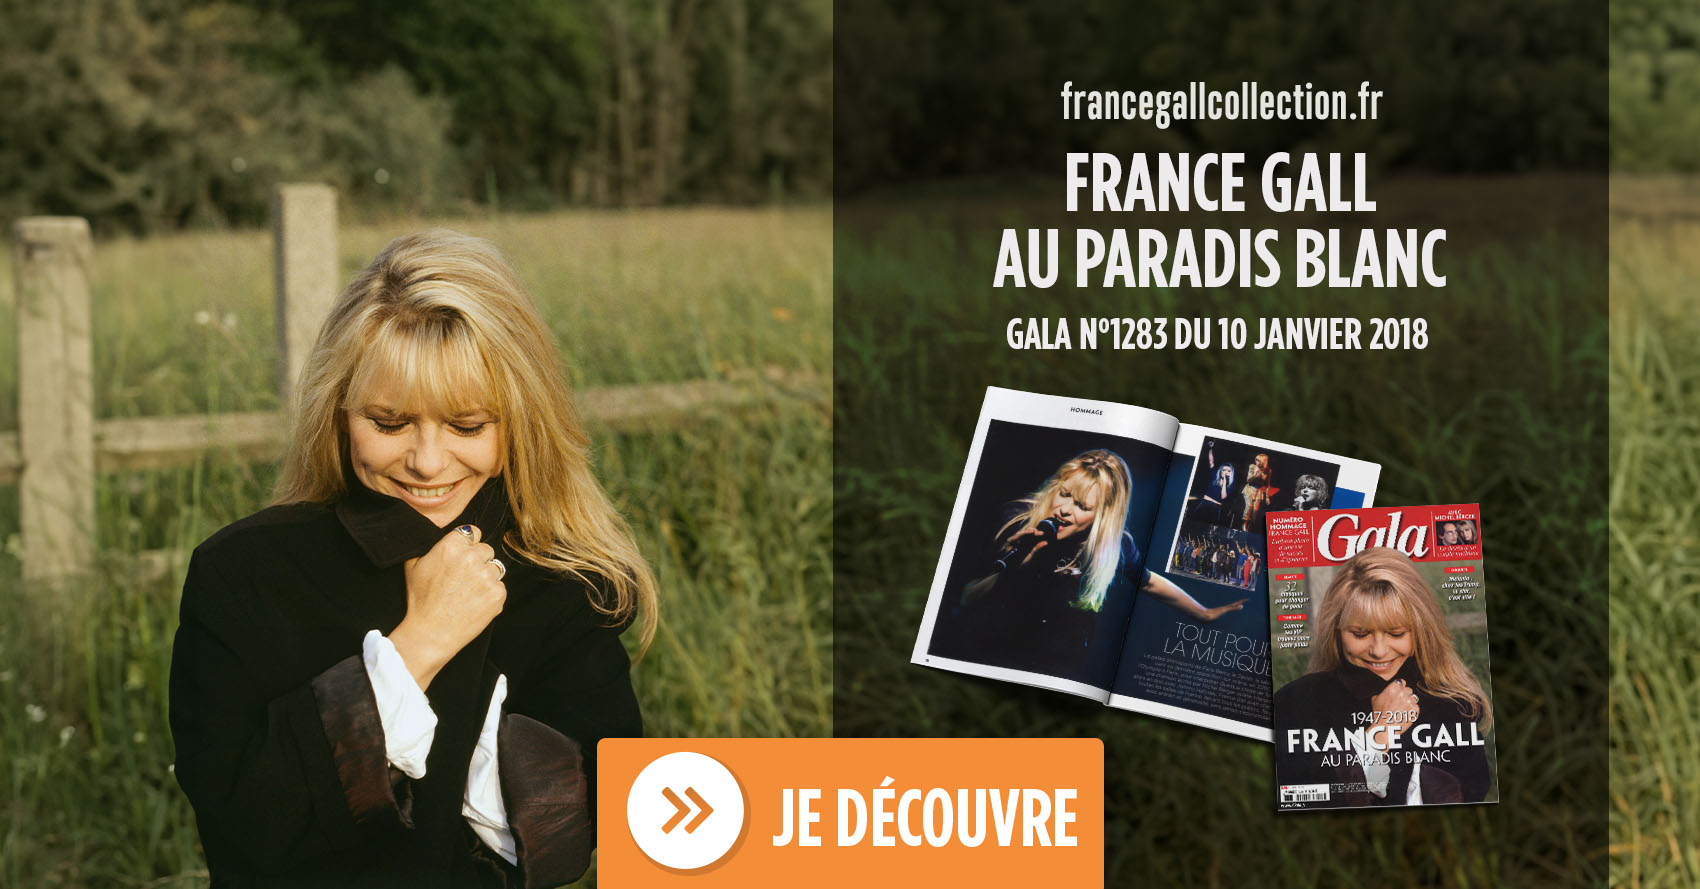 Un peu plus d'un mois après Johnny Hallyday, France Gall a rejoint Michel Berger et leur fille Pauline dans leur « Paradis blanc ».